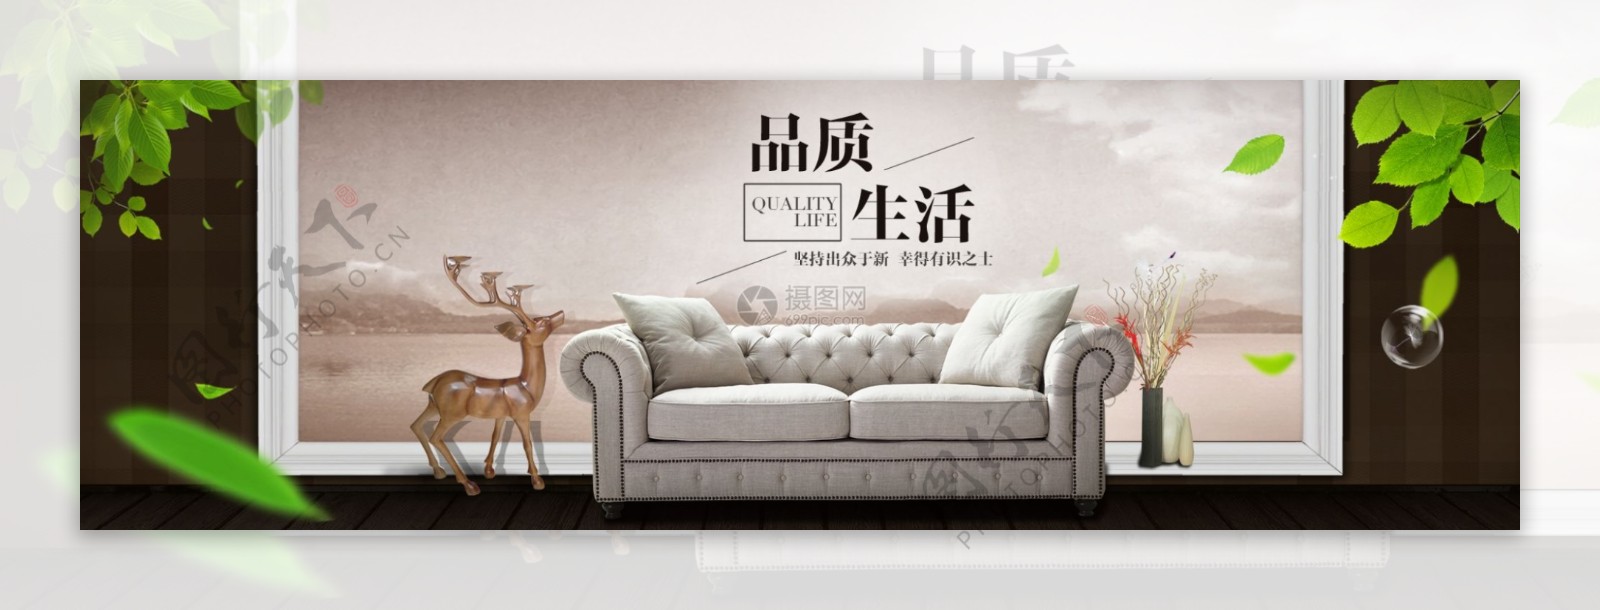 家具沙发促销淘宝banner